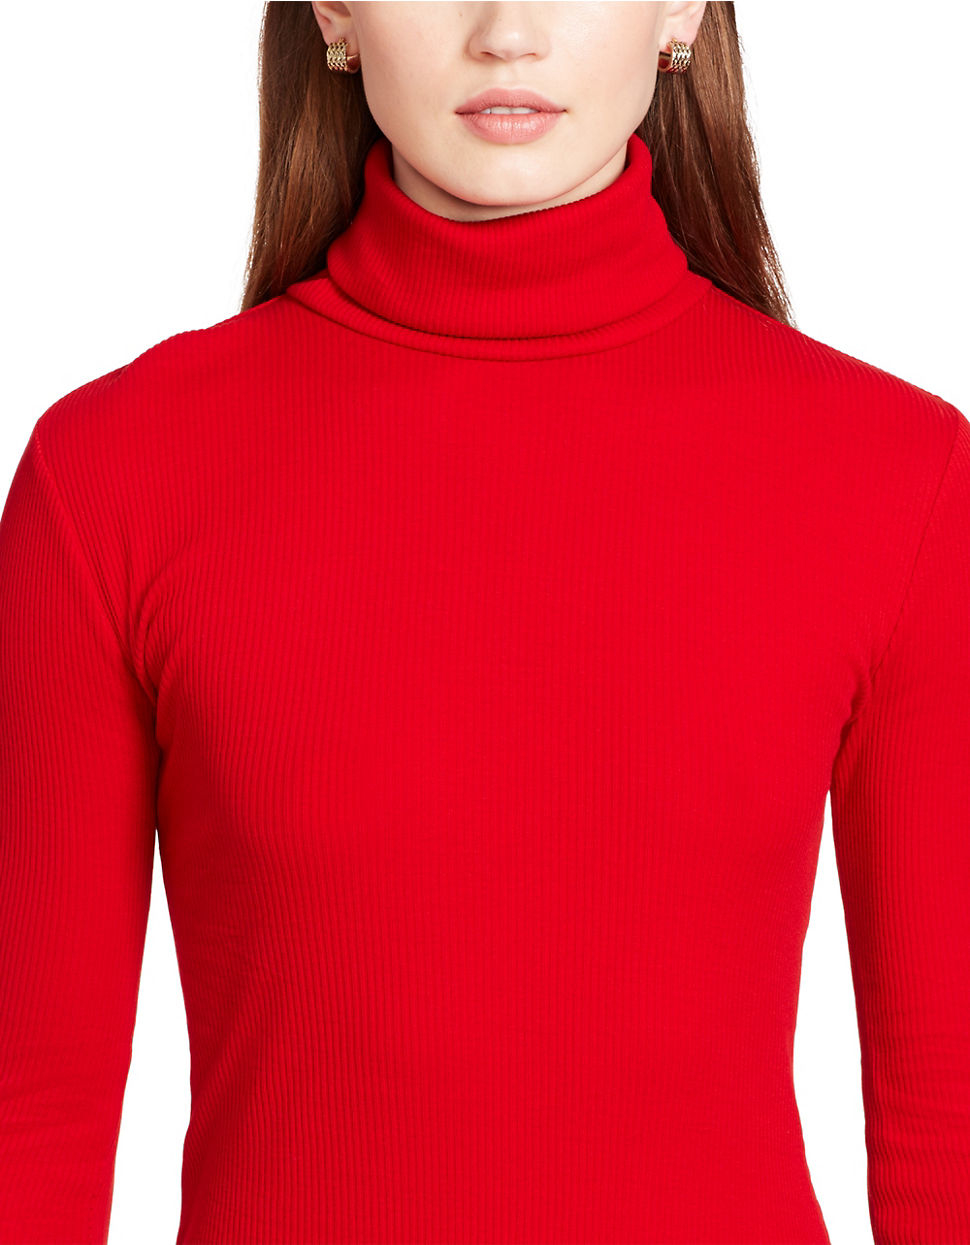 Lauren by Ralph Lauren Ribbed Turtleneck Sweater in Red - Lyst